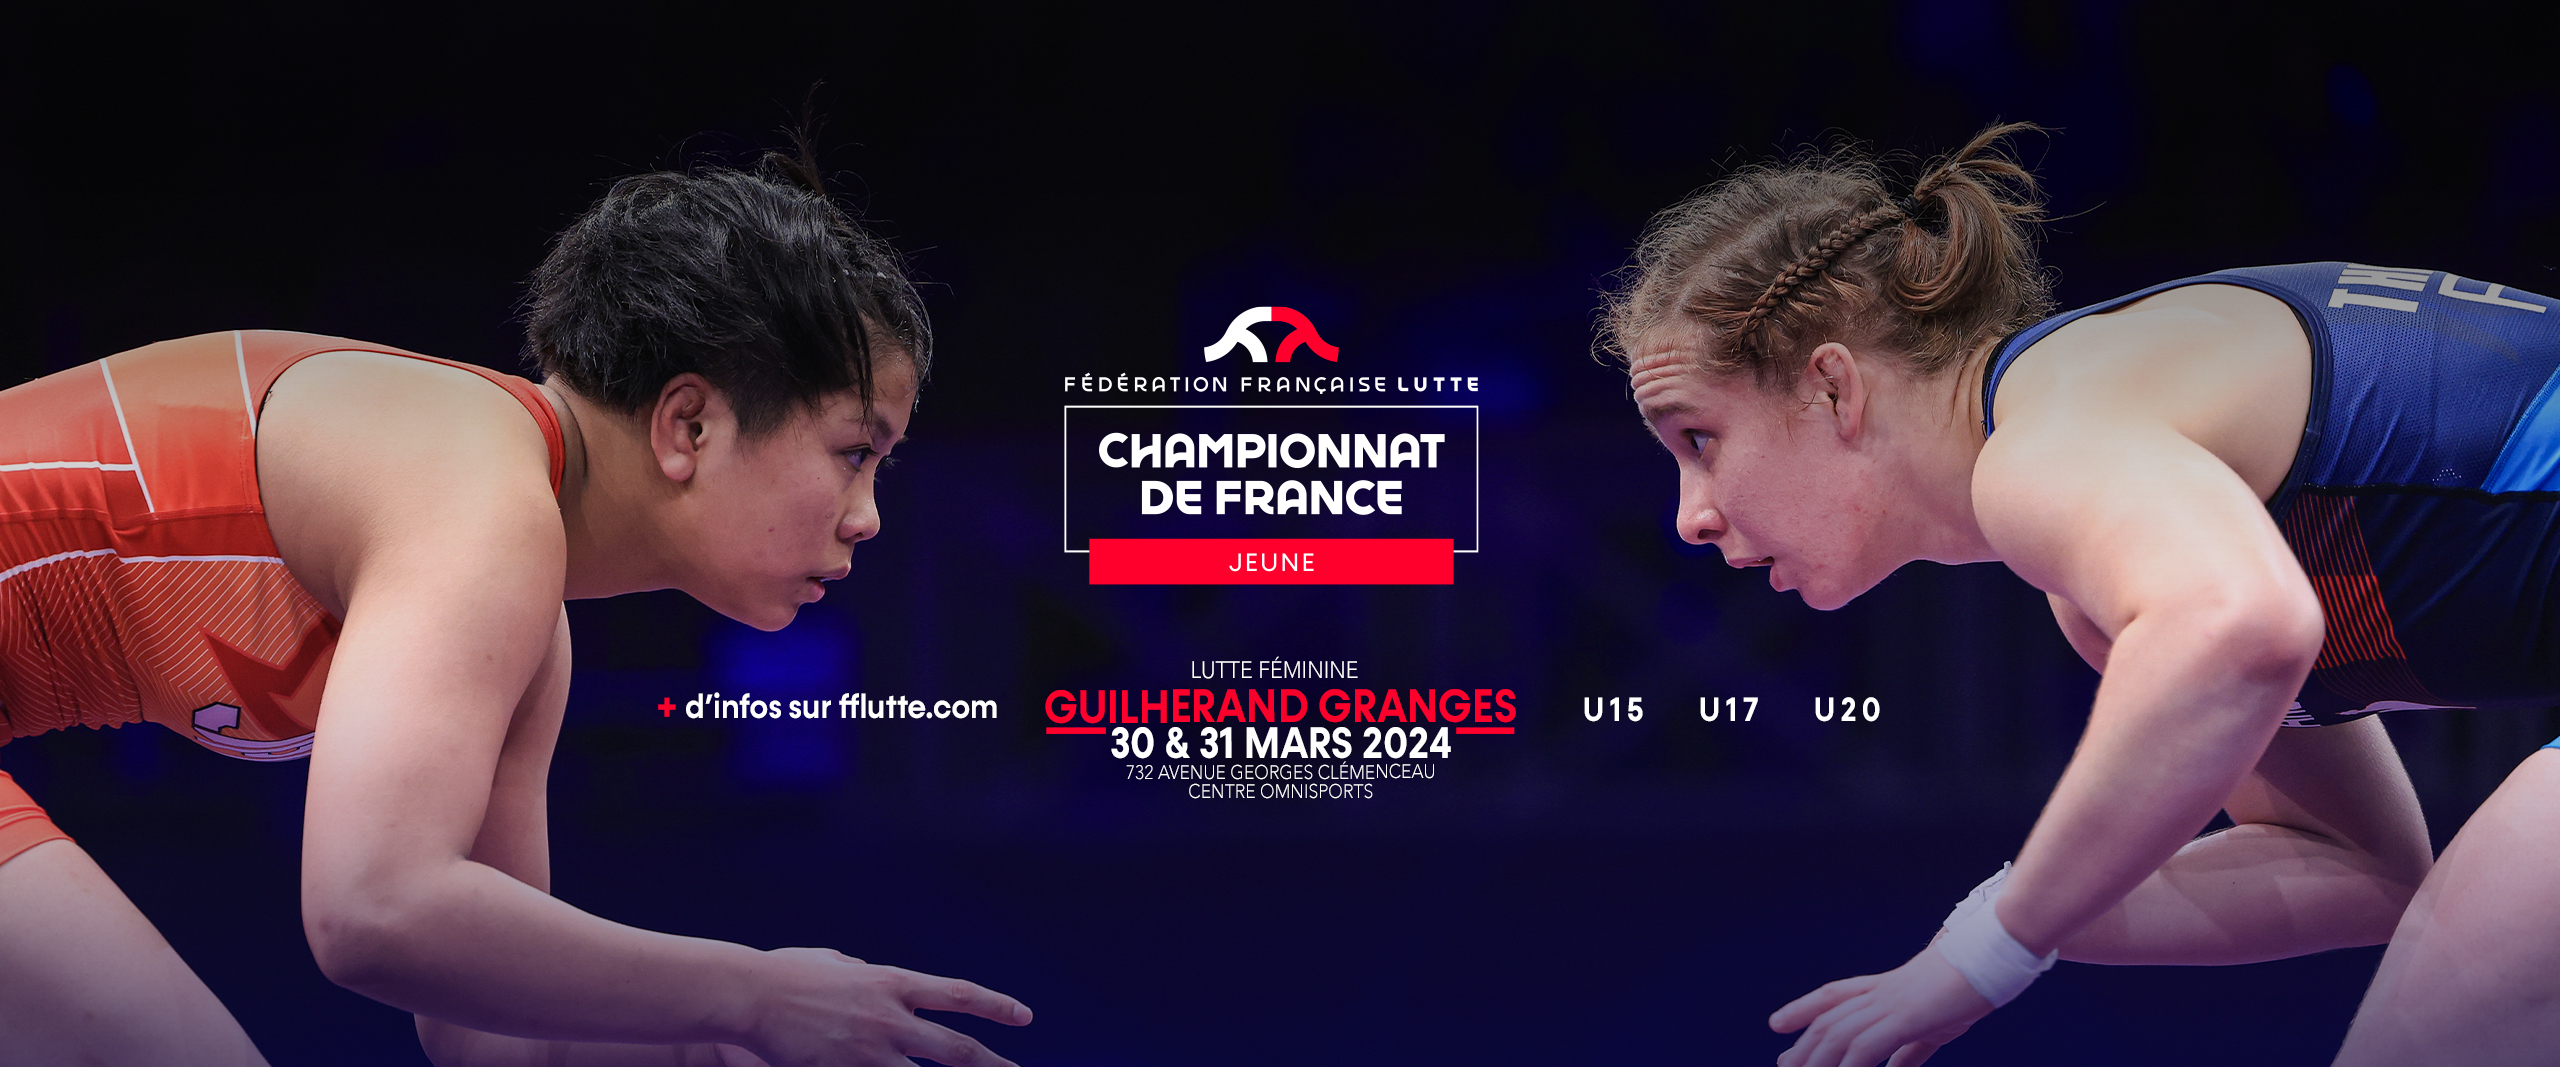 Championnats de France Féminine